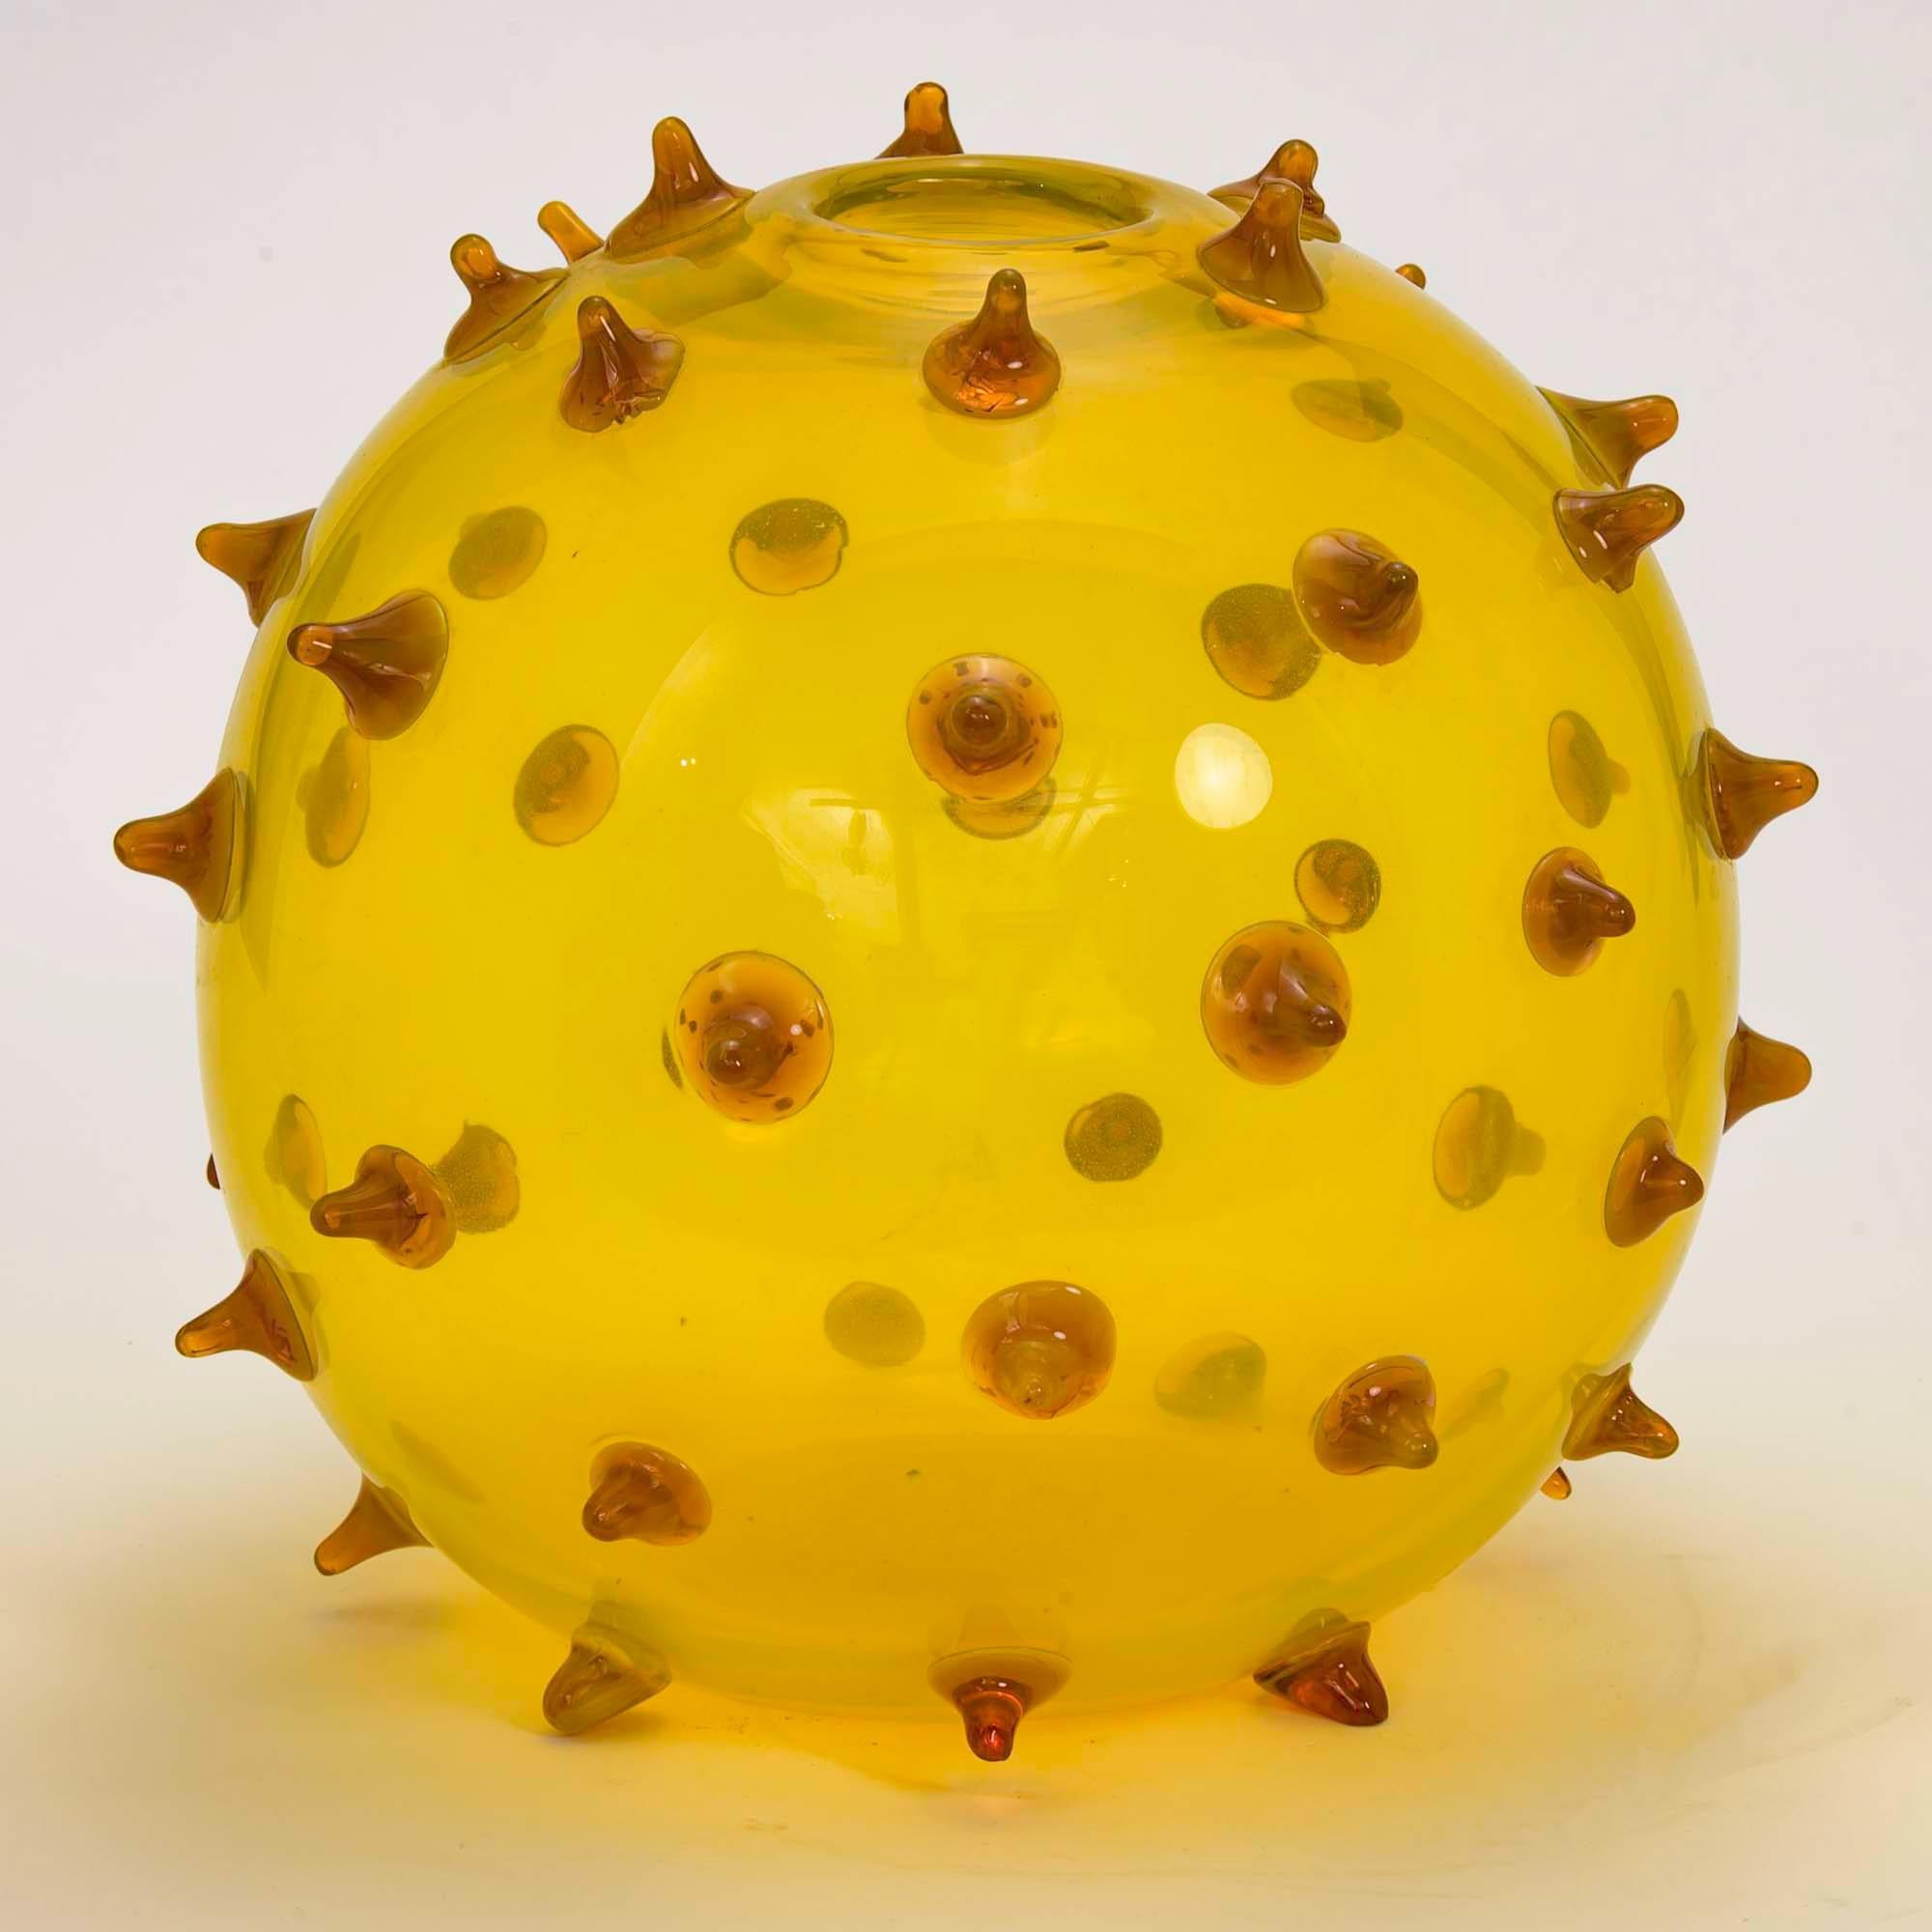 Magnifique et inhabituel vase sculptural organique en verre jaune vif. 
Créé par l'artiste Pino Signoretto. (1944=2017). Artisan du verre d'art de renommée mondiale. Signé en dessous. Excellent état.